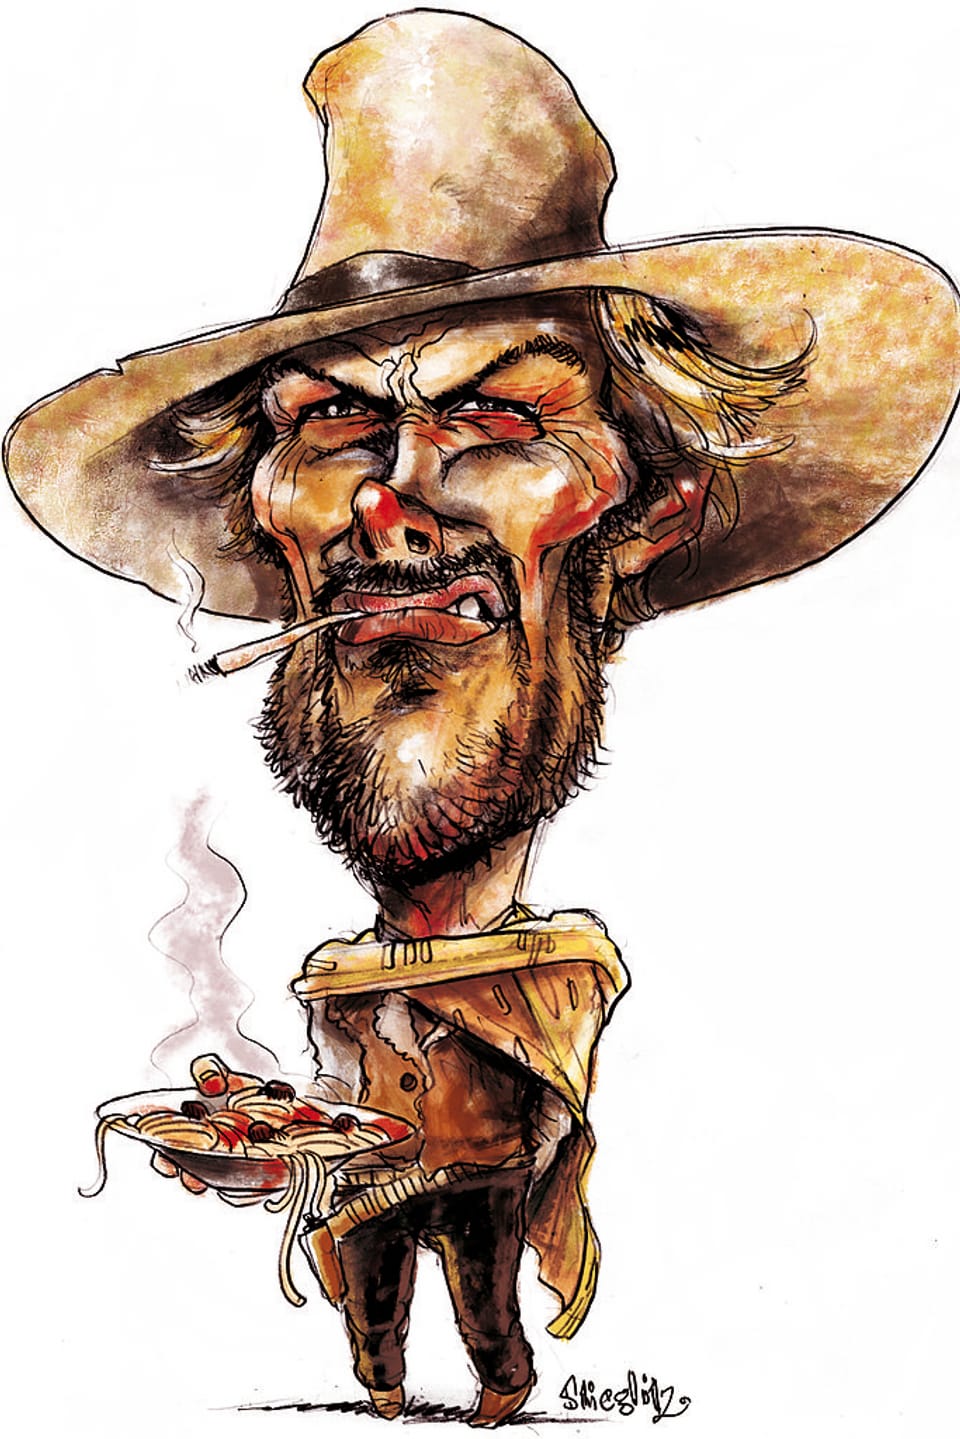 Portraitkarikatur mit dem Konterfei von Clint Eastwood. Im Mund hängt eine rauchende Zigarette, auf dem Kopf sitzt sein Schlapphut, die Augen sind zusammmengekniffen und in der Hand hält er einen Teller voller dampfender Teigwaren.